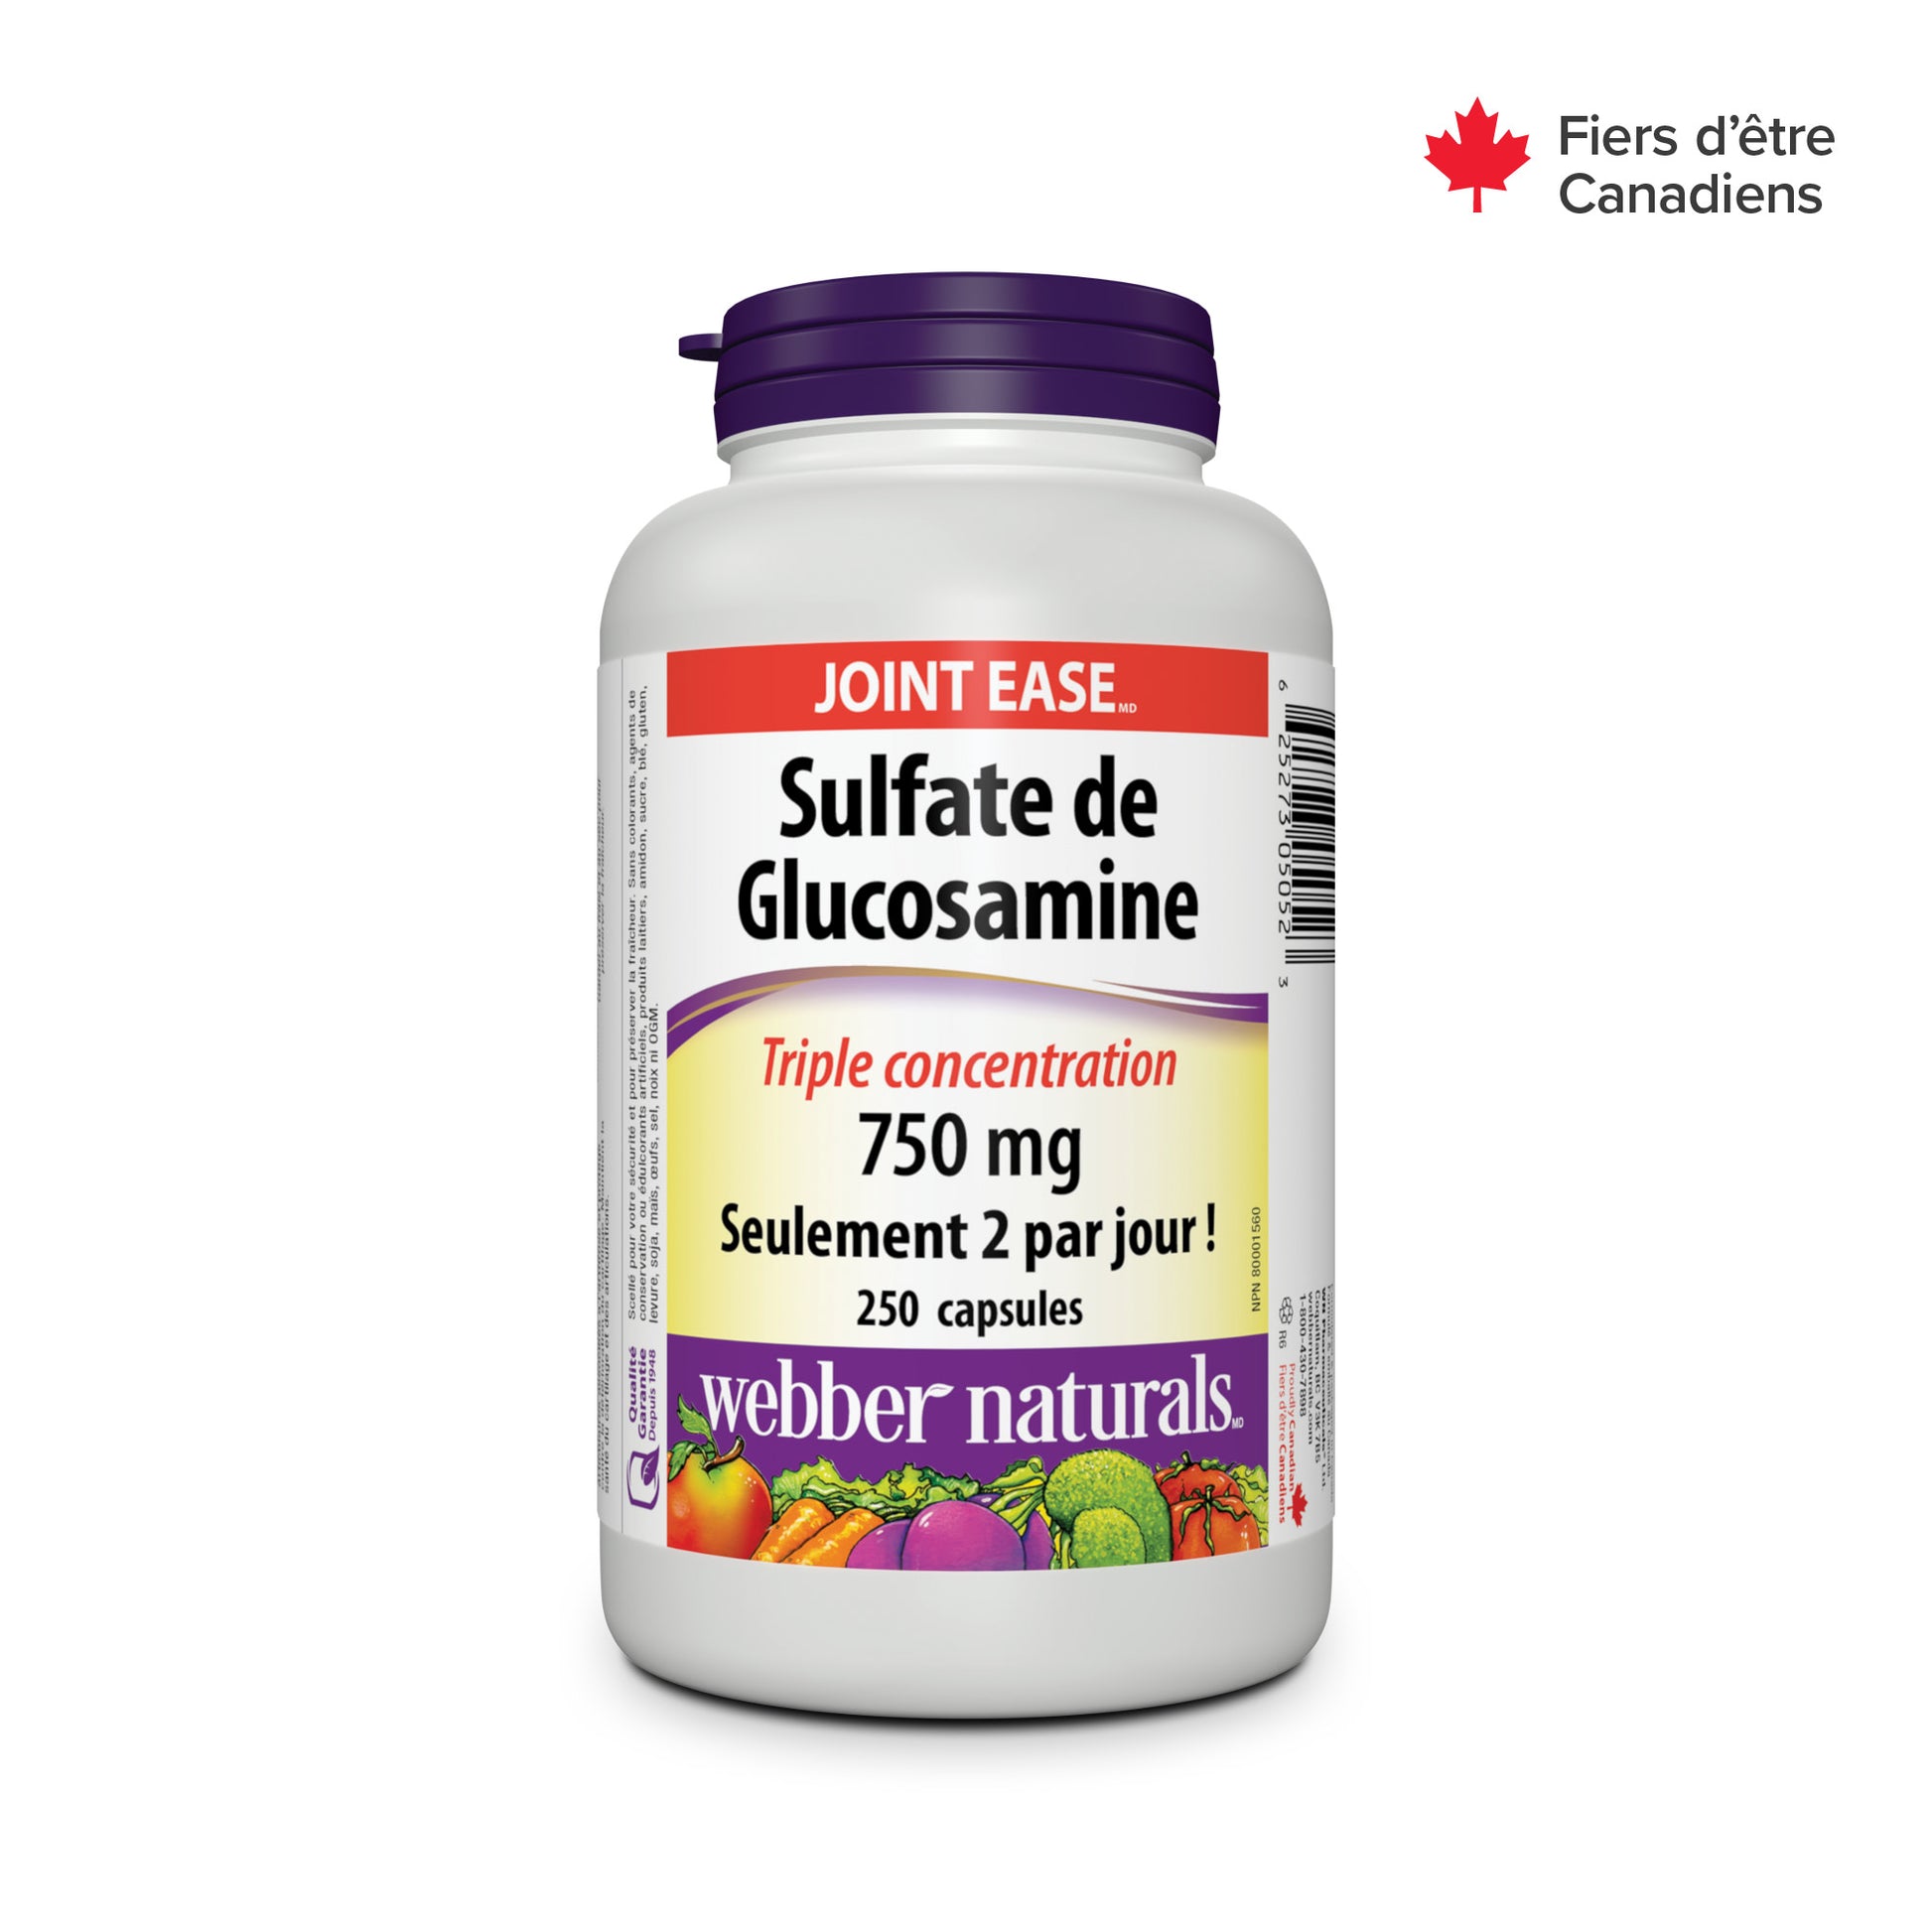 Sulfate de Glucosamine Triple concentration 750 mg for Webber Naturals|v|hi-res|WN5052